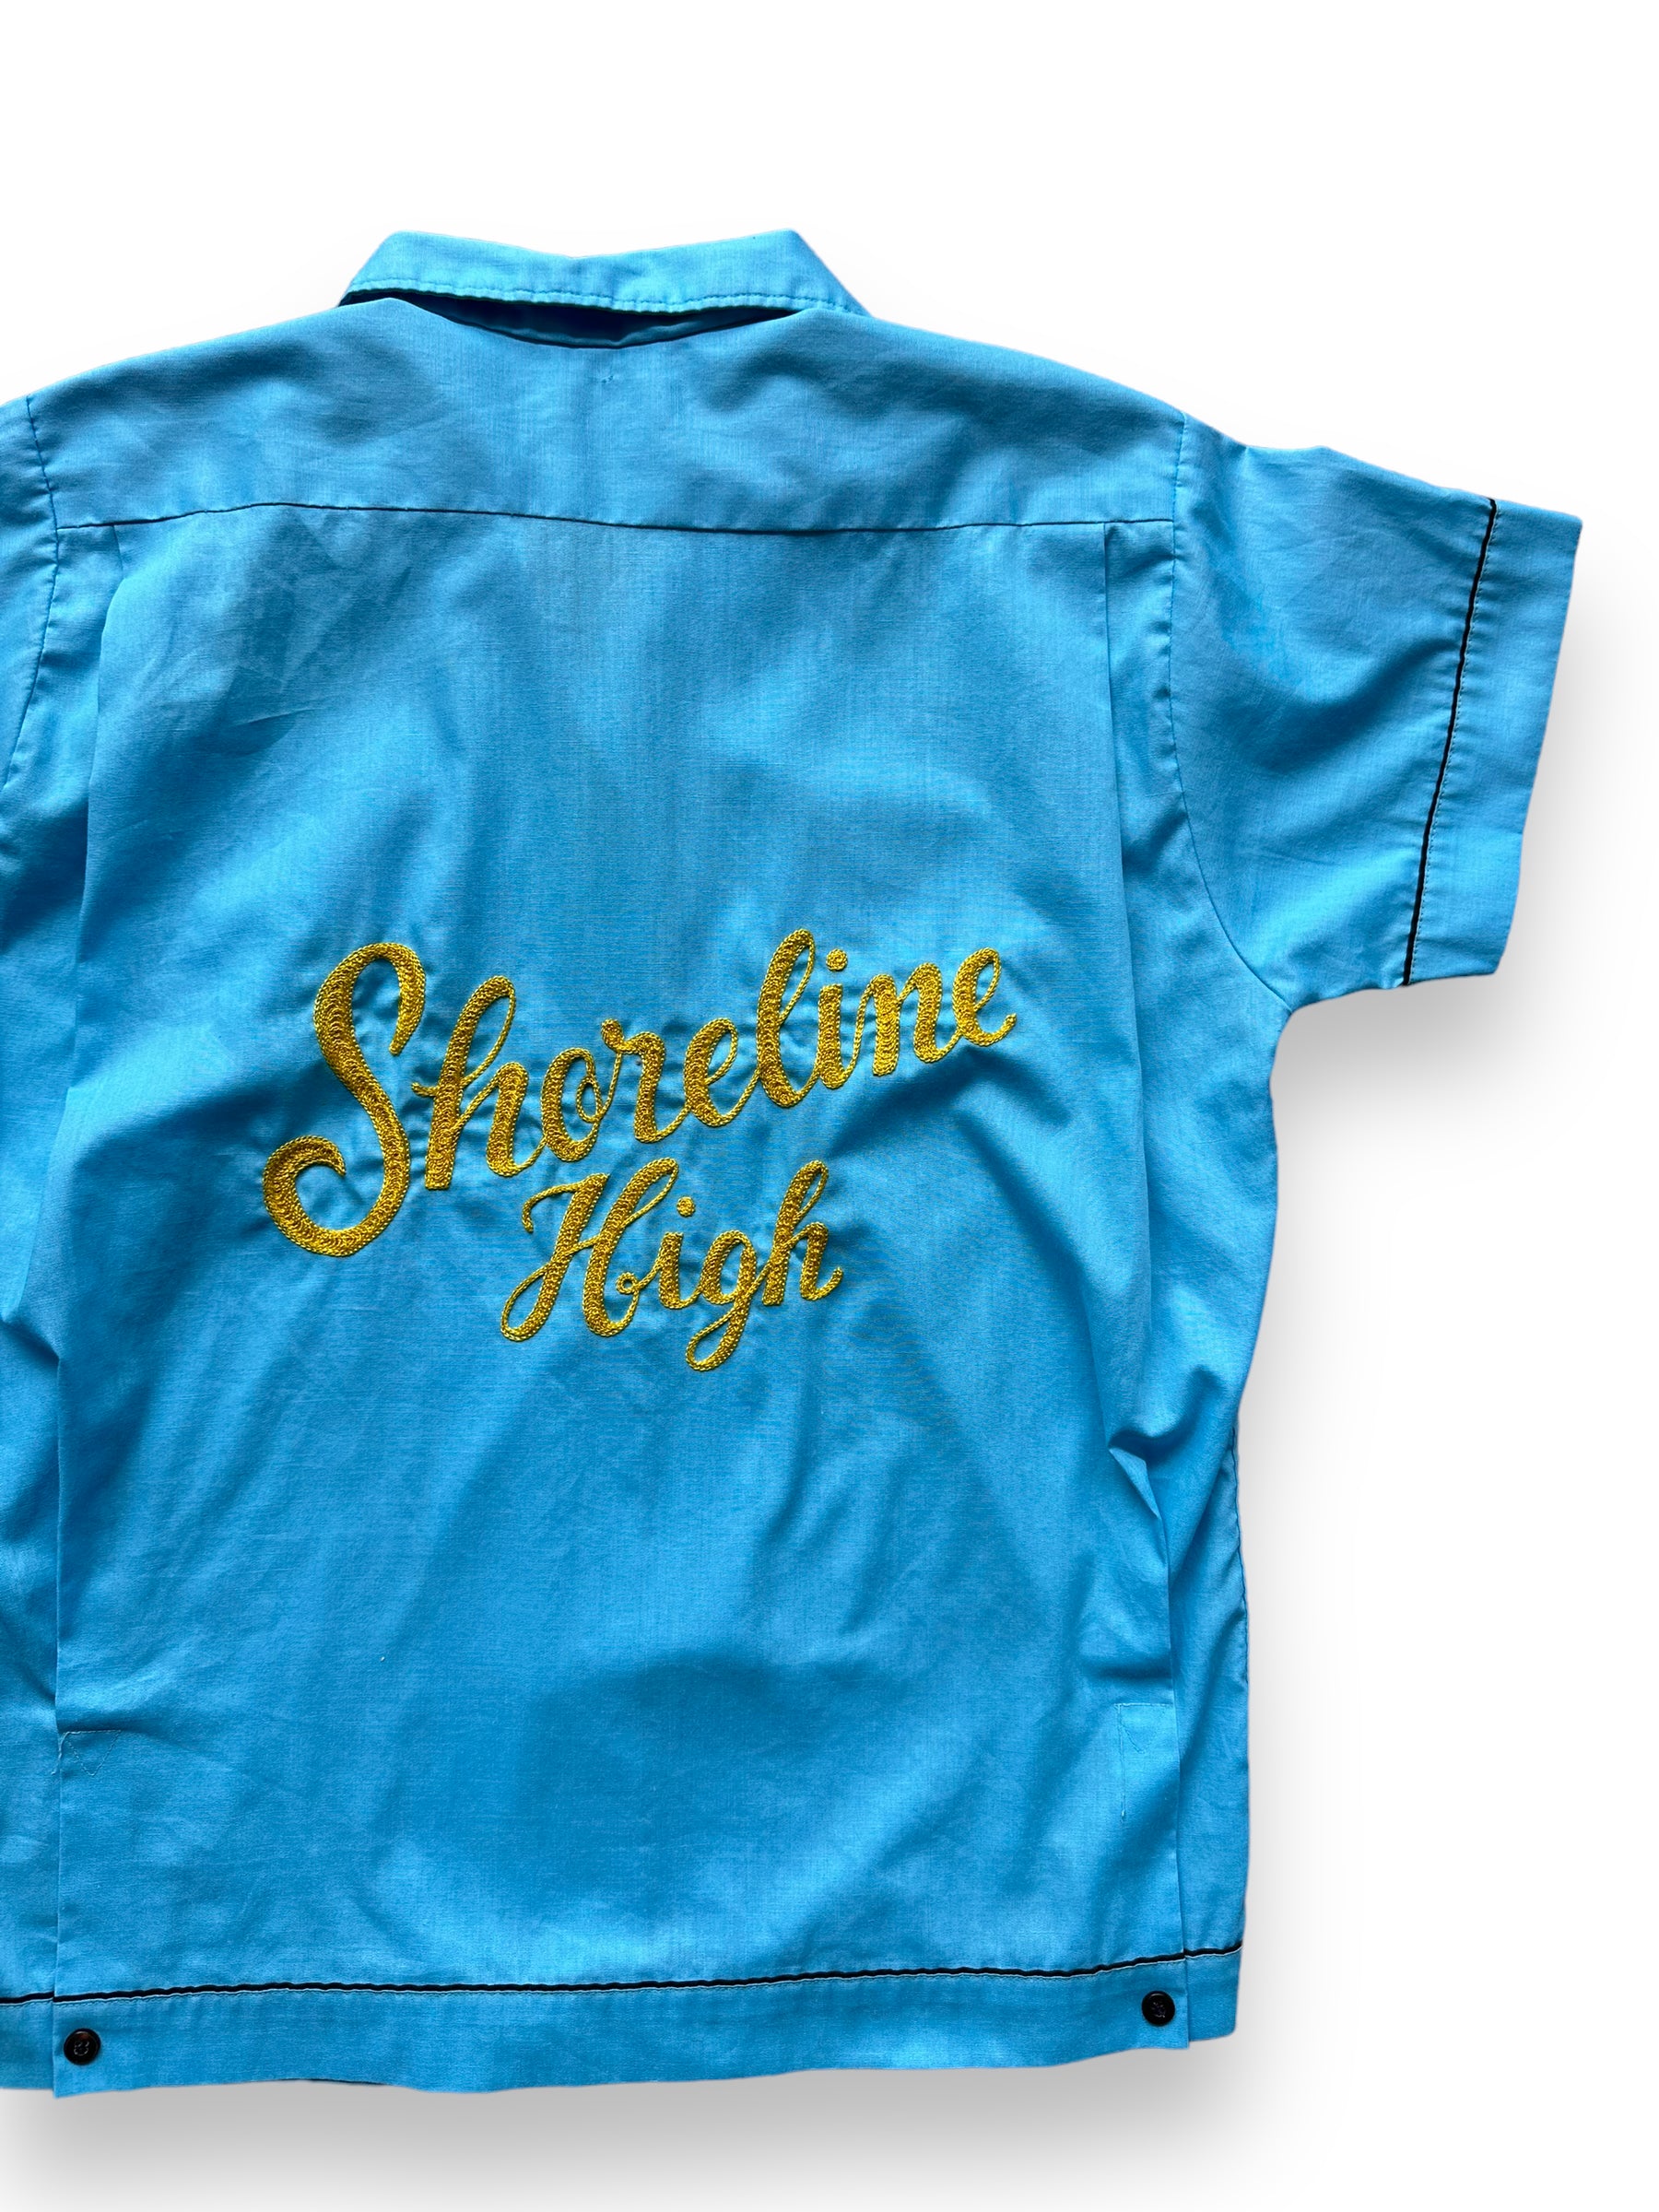 Back right of Vintage "Shoreline High" Chainstitched Bowling Shirt SZ 36 | Vintage Bowling Shirt Seattle | Barn Owl Vintage Seattle